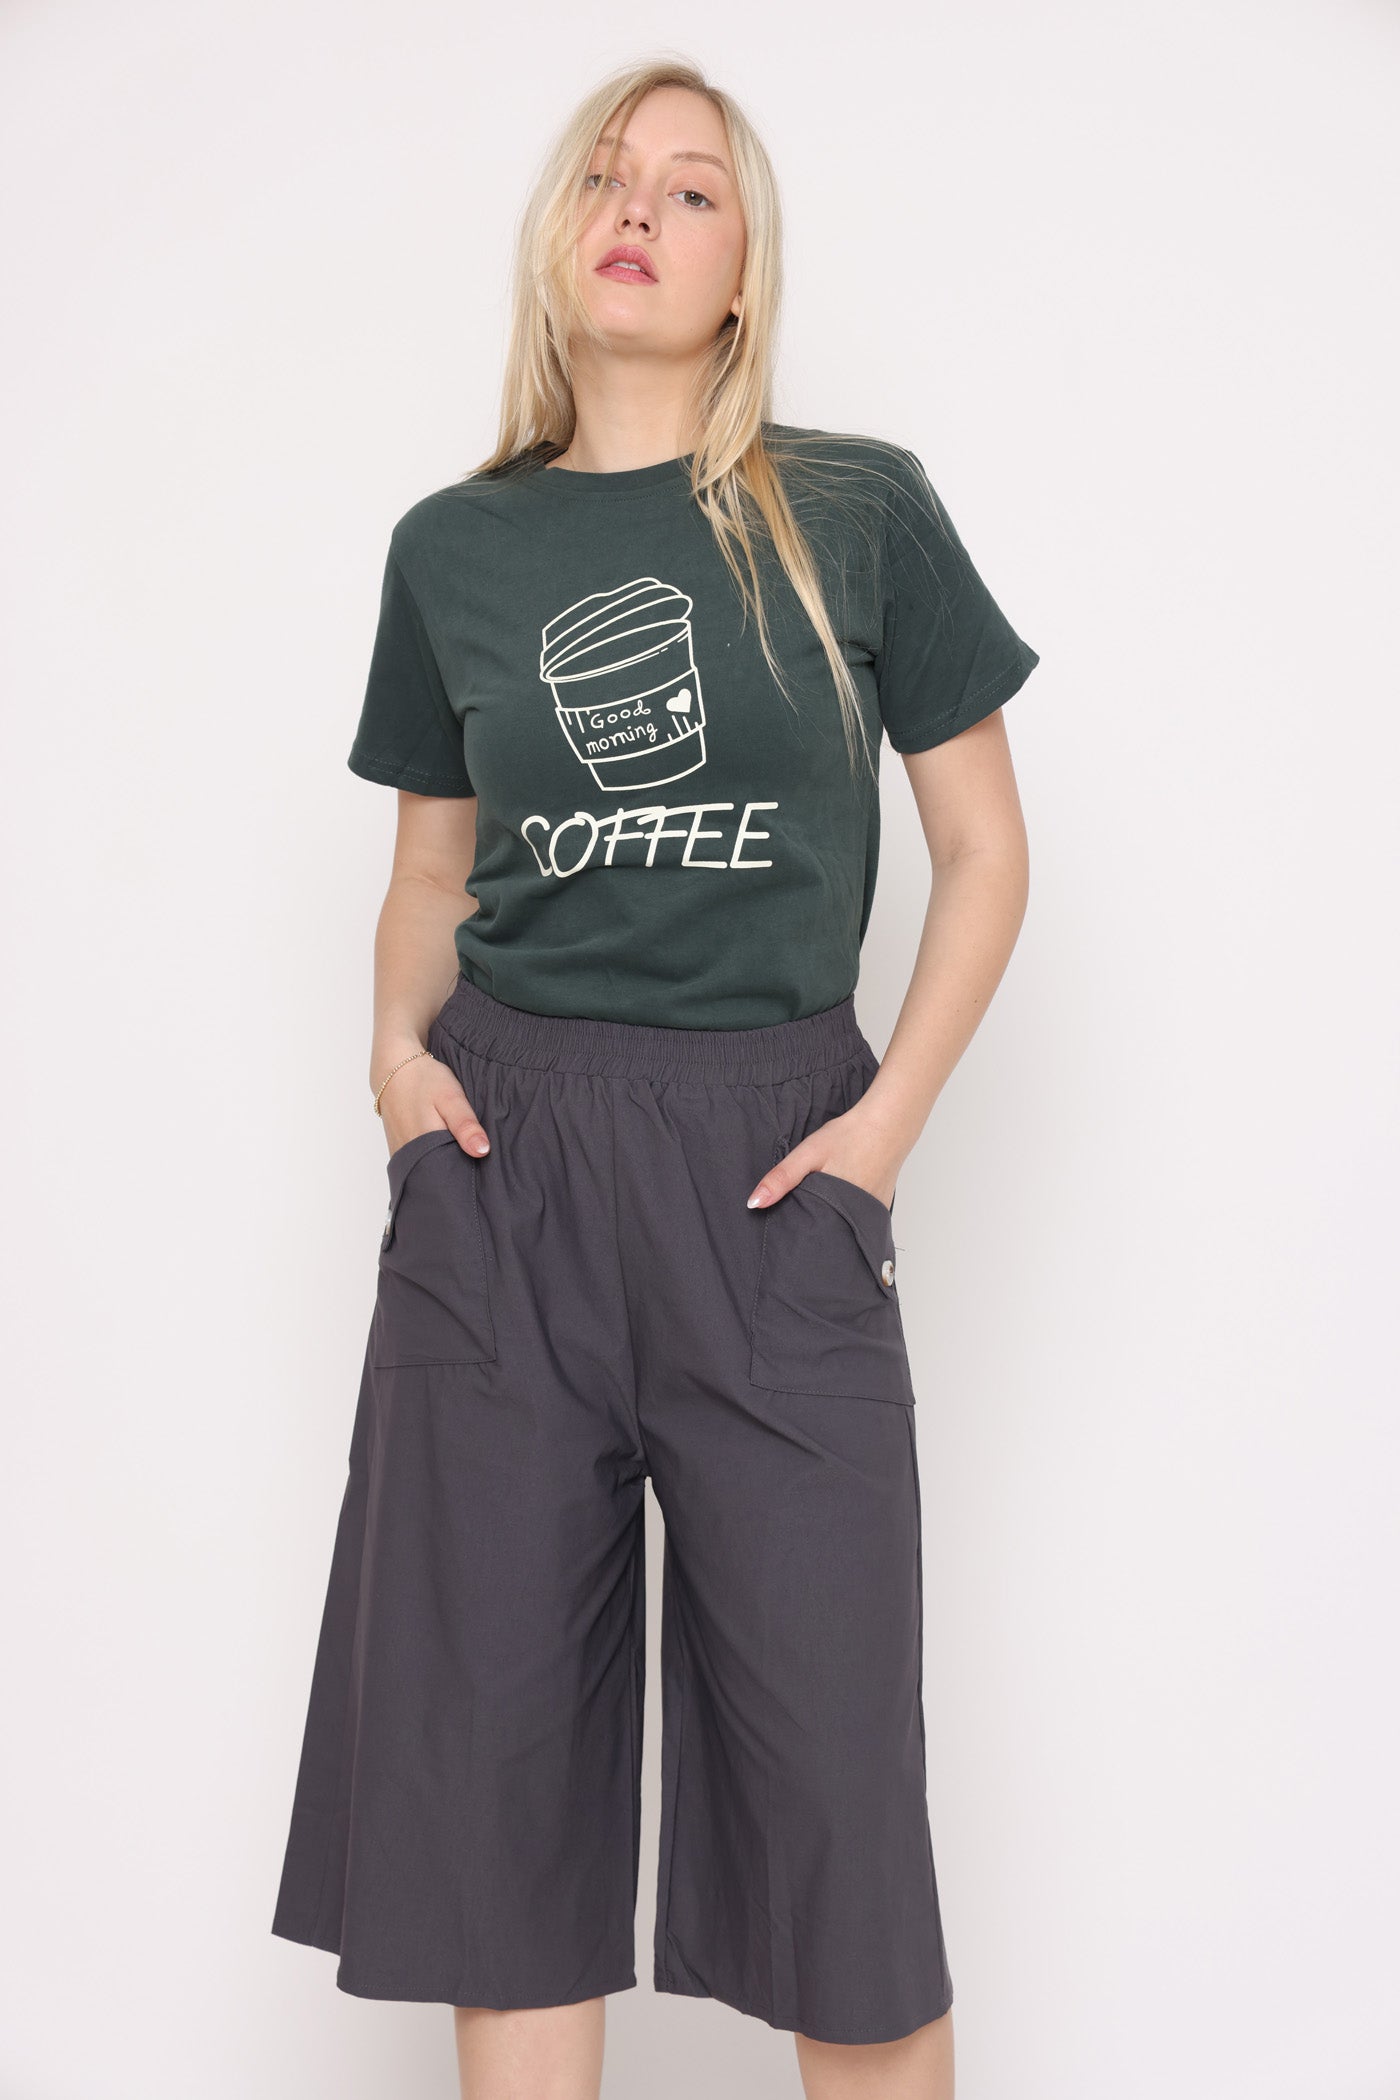 חולצת COFFEE